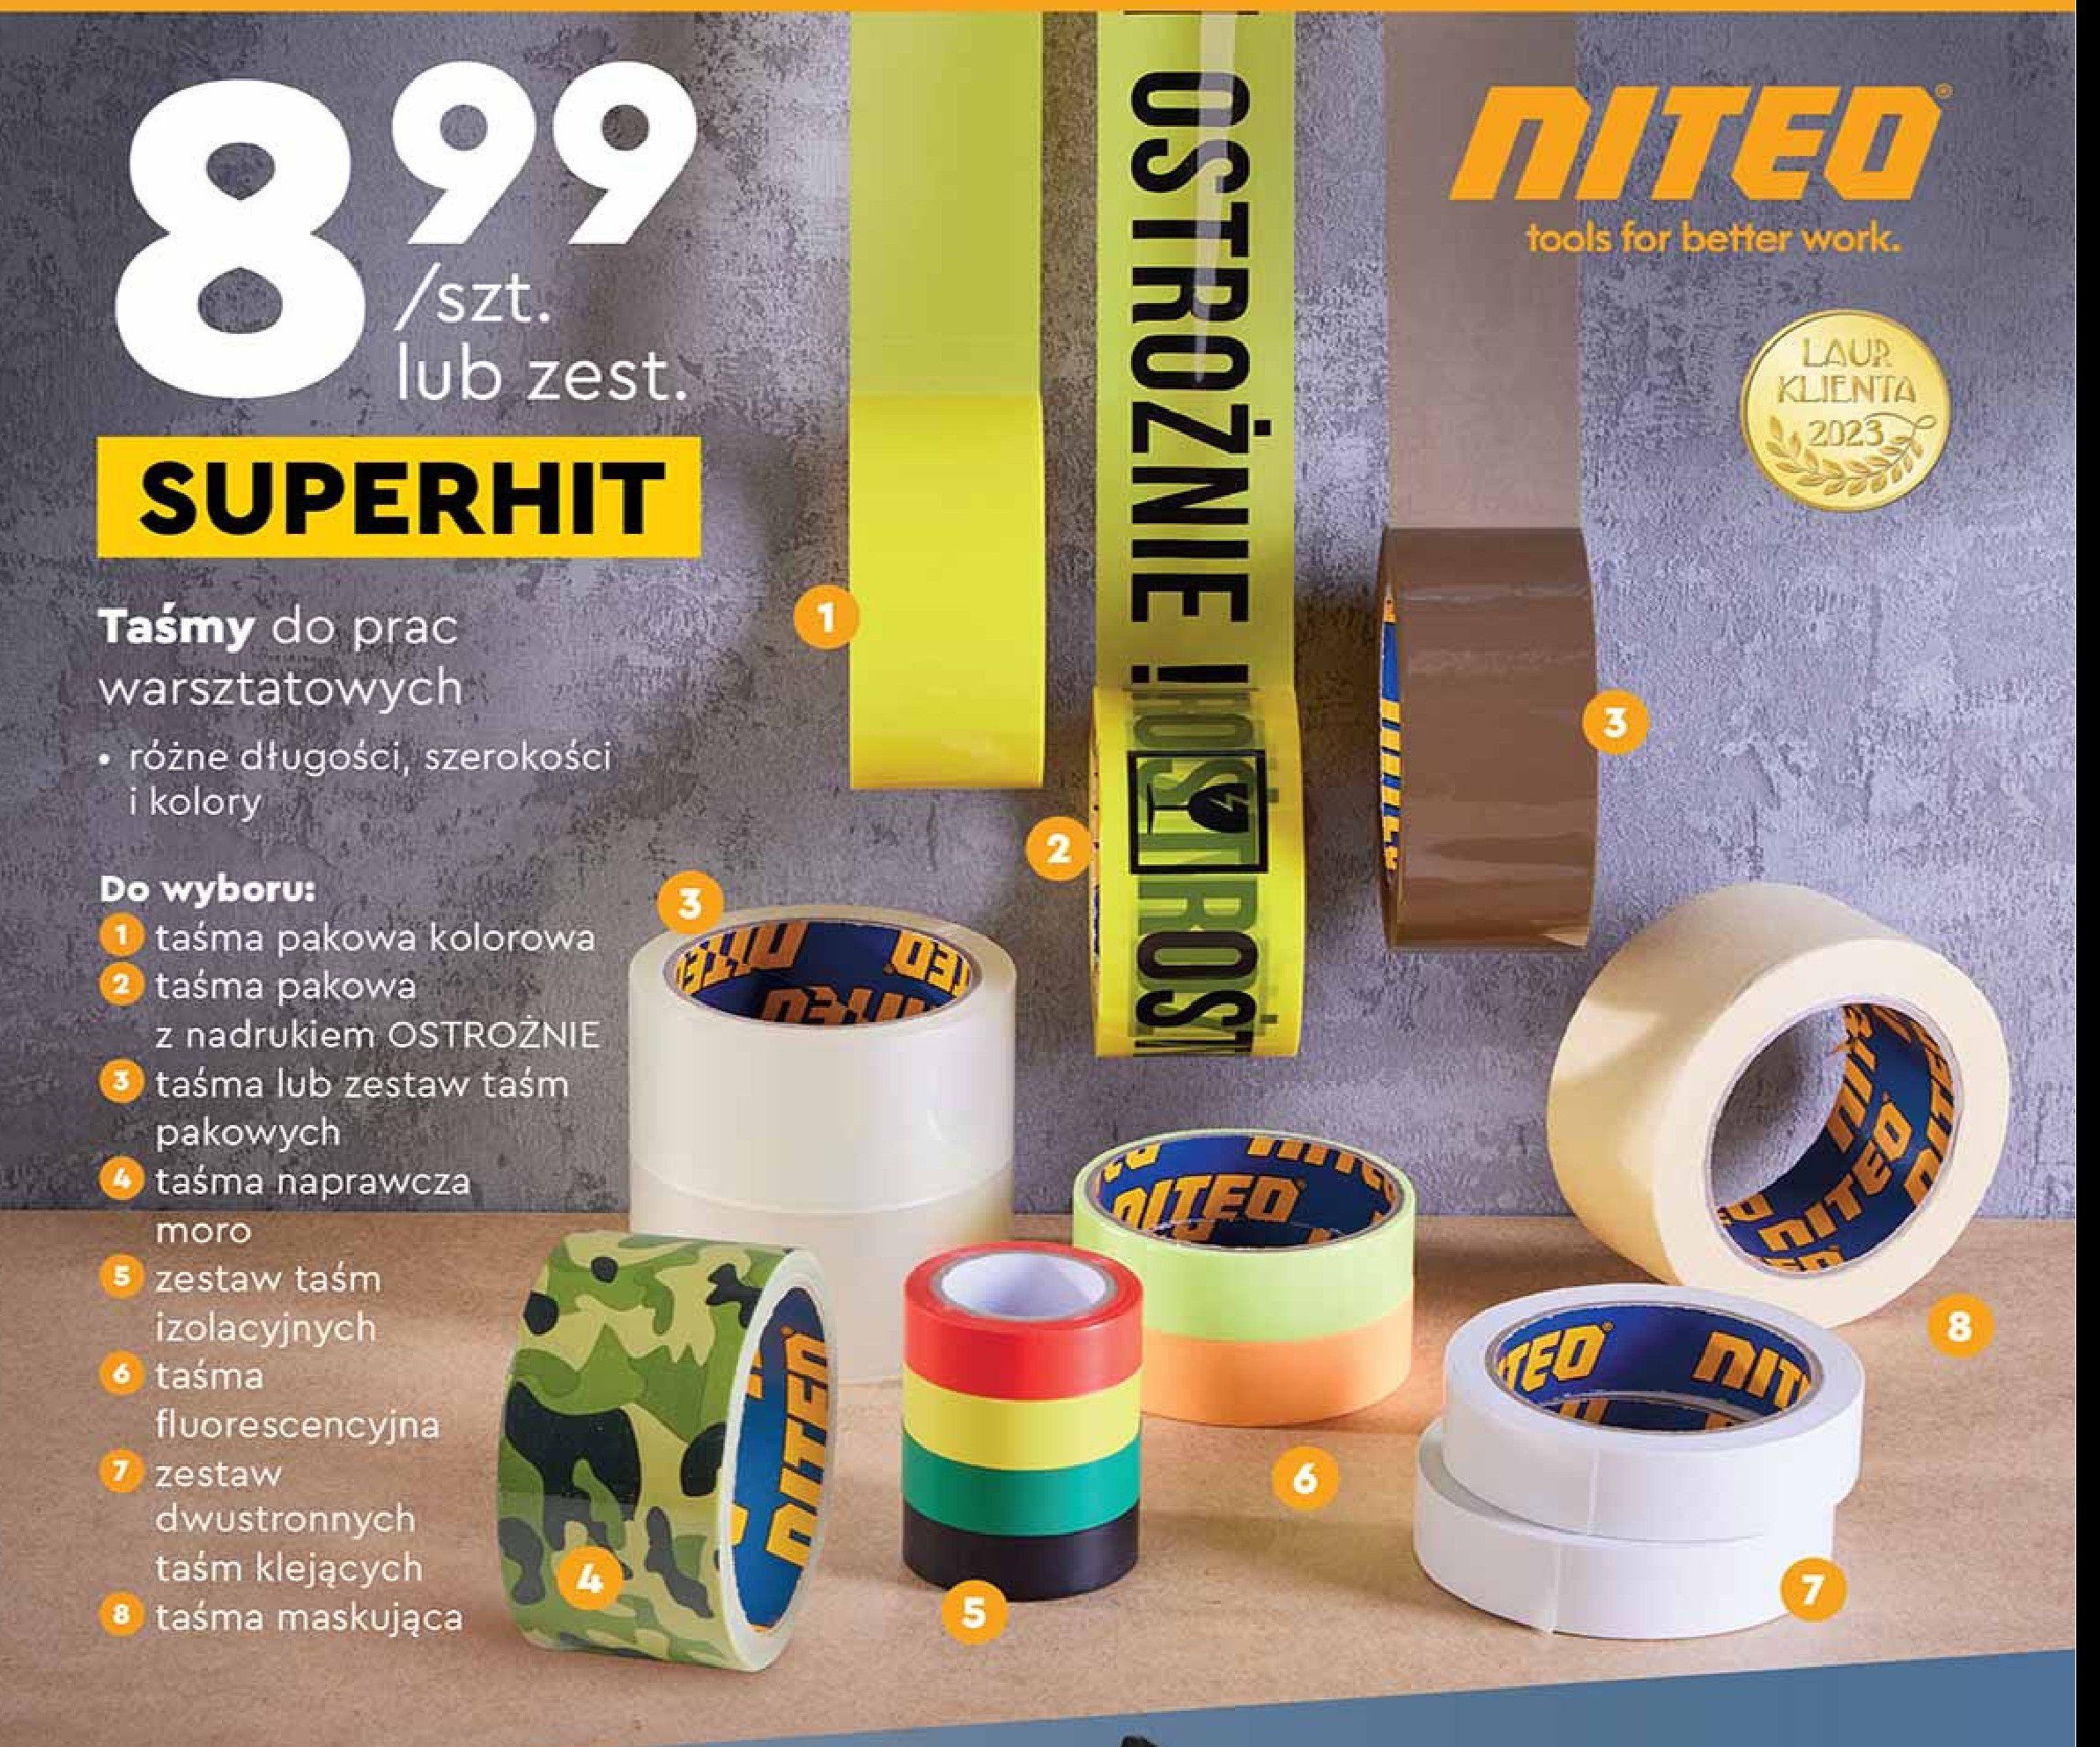 Taśma fluorescencyjna Niteo tools promocja